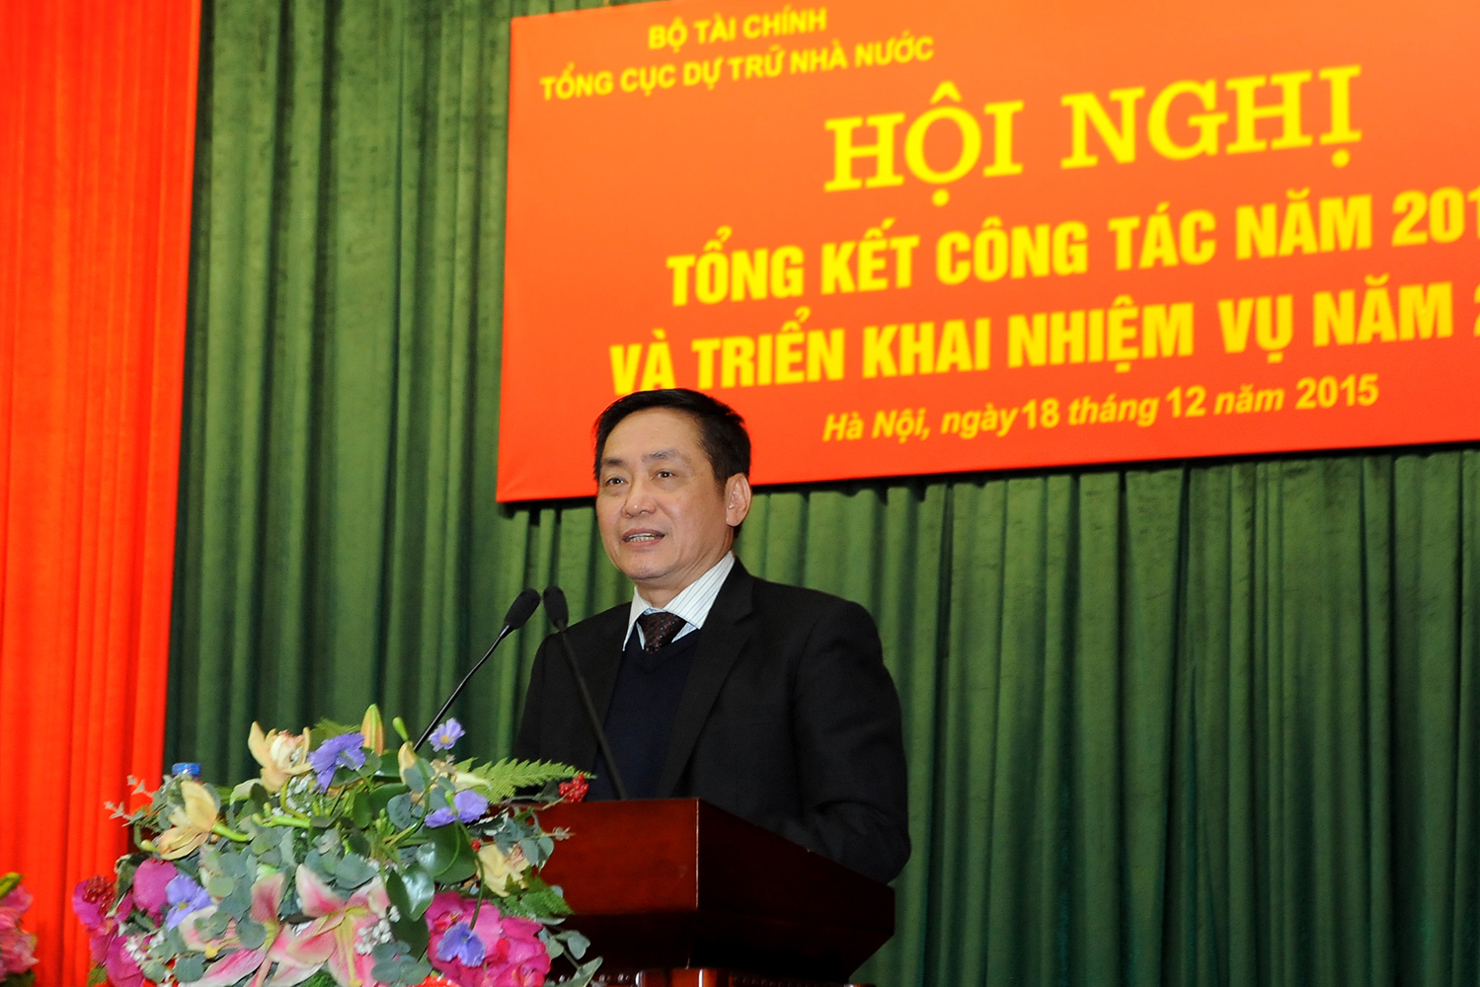 TS. Phạm Phan Dũng, Tổng cục trưởng Tổng cục Dự trữ Nhà nước phát biểu tại Hội nghị Tổng kết công tác năm 2015 và triển khai nhiệm vụ năm 2016 của ngành Dự trữ Quốc gia.